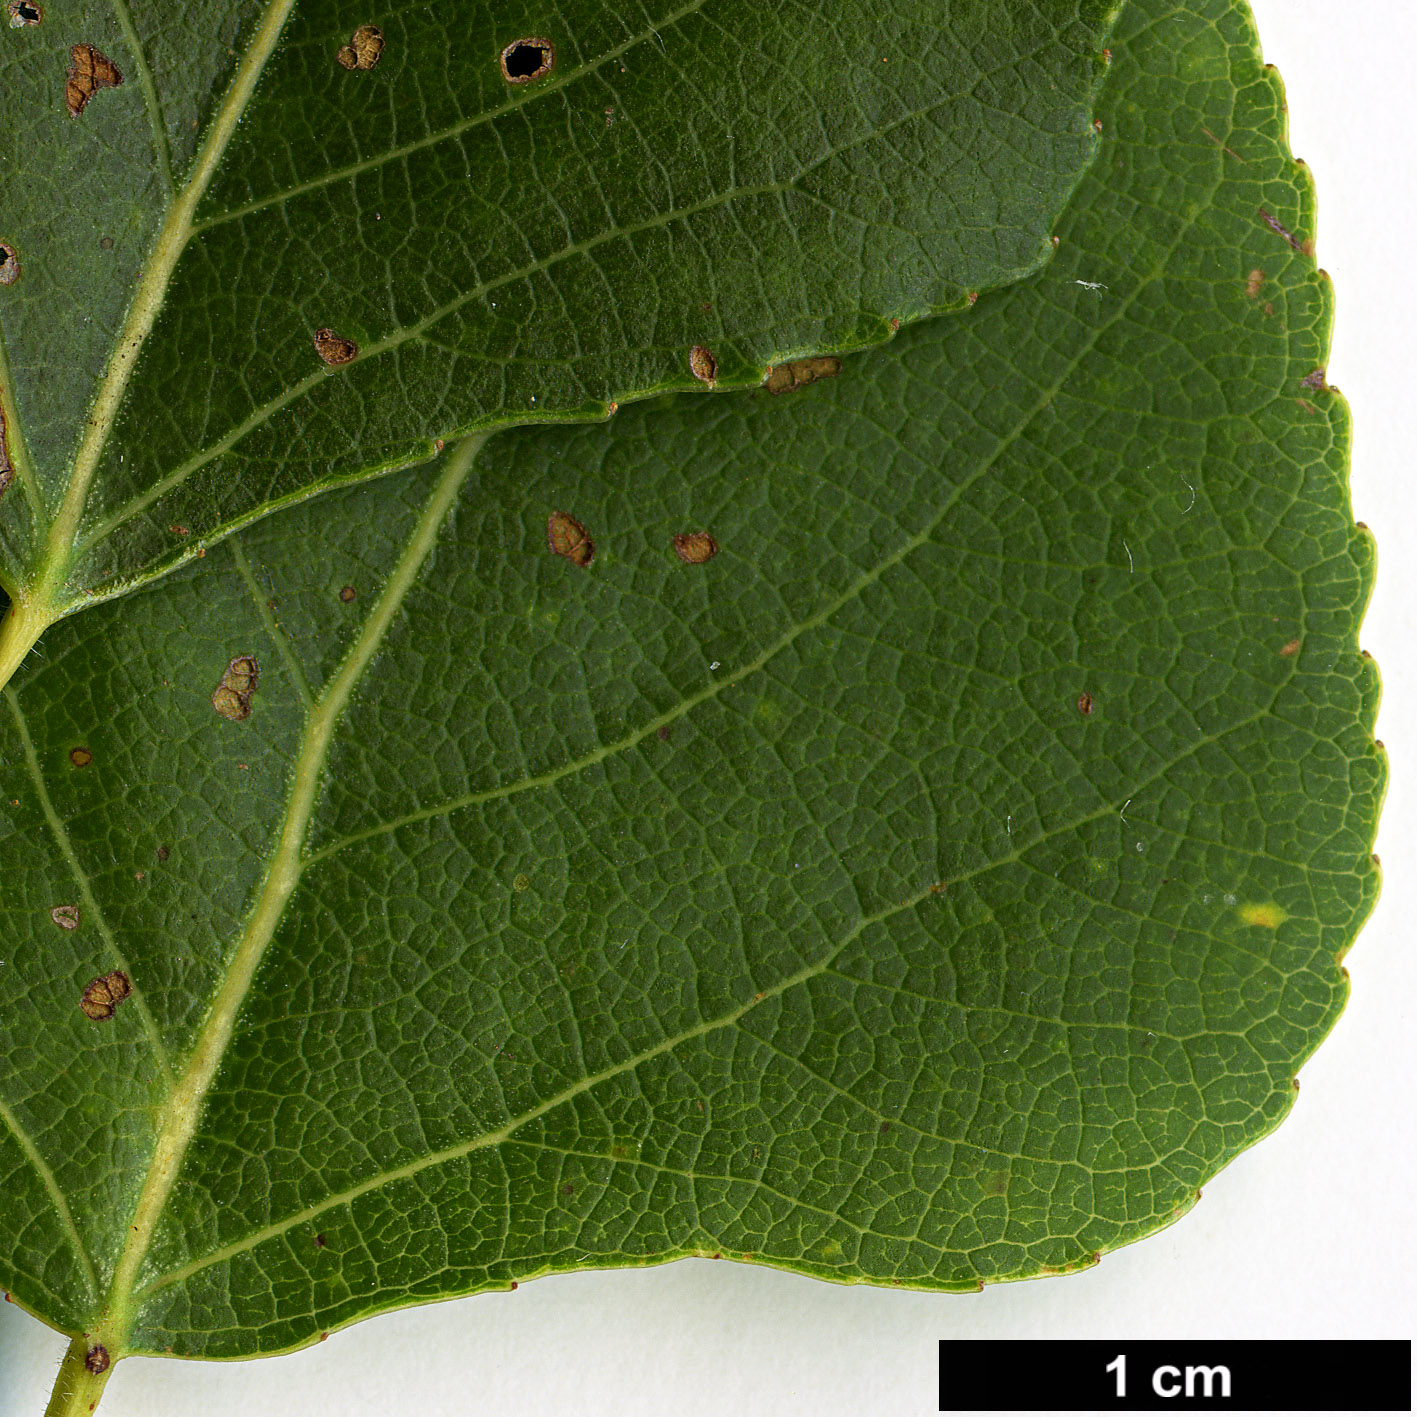 High resolution image: Family: Salicaceae - Genus: Populus - Taxon: nigra - SpeciesSub: subsp. betulifolia